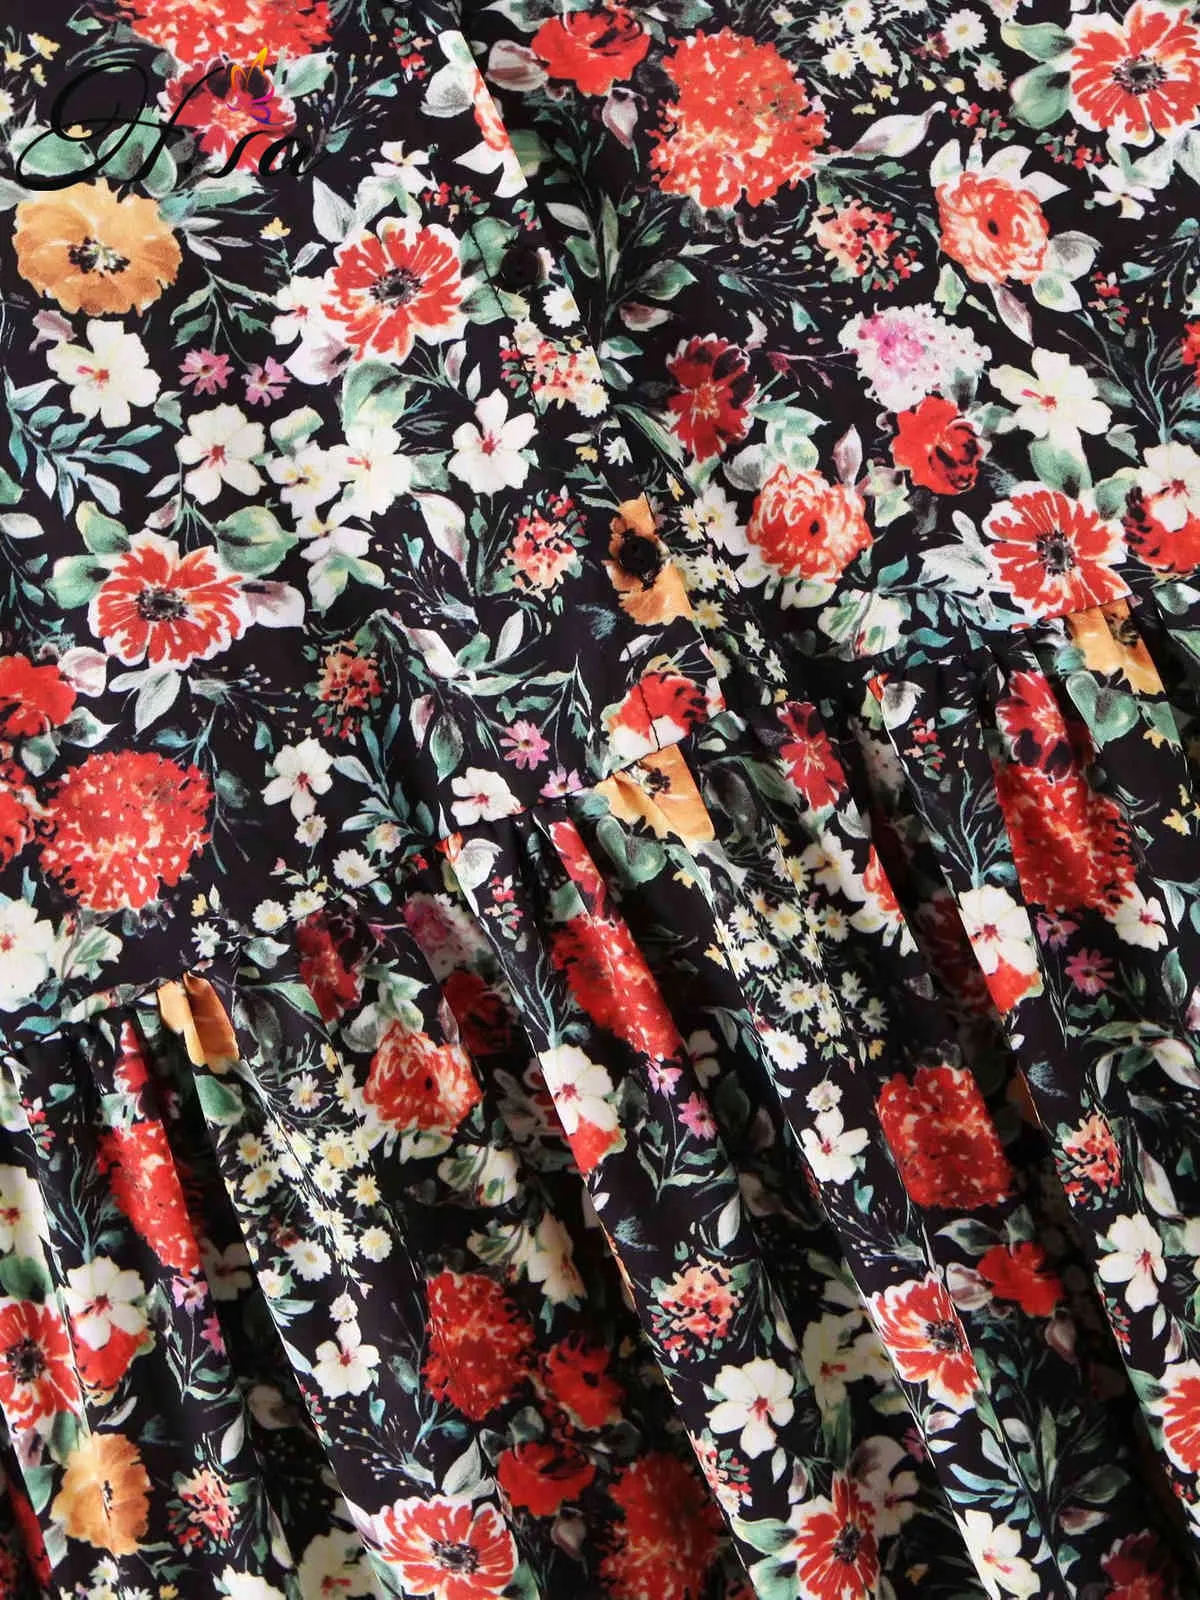 Femmes Summer Long Maxi Robes Manches Floral Robes de soirée Longueur de plancher Plage Roube Mujer 210430